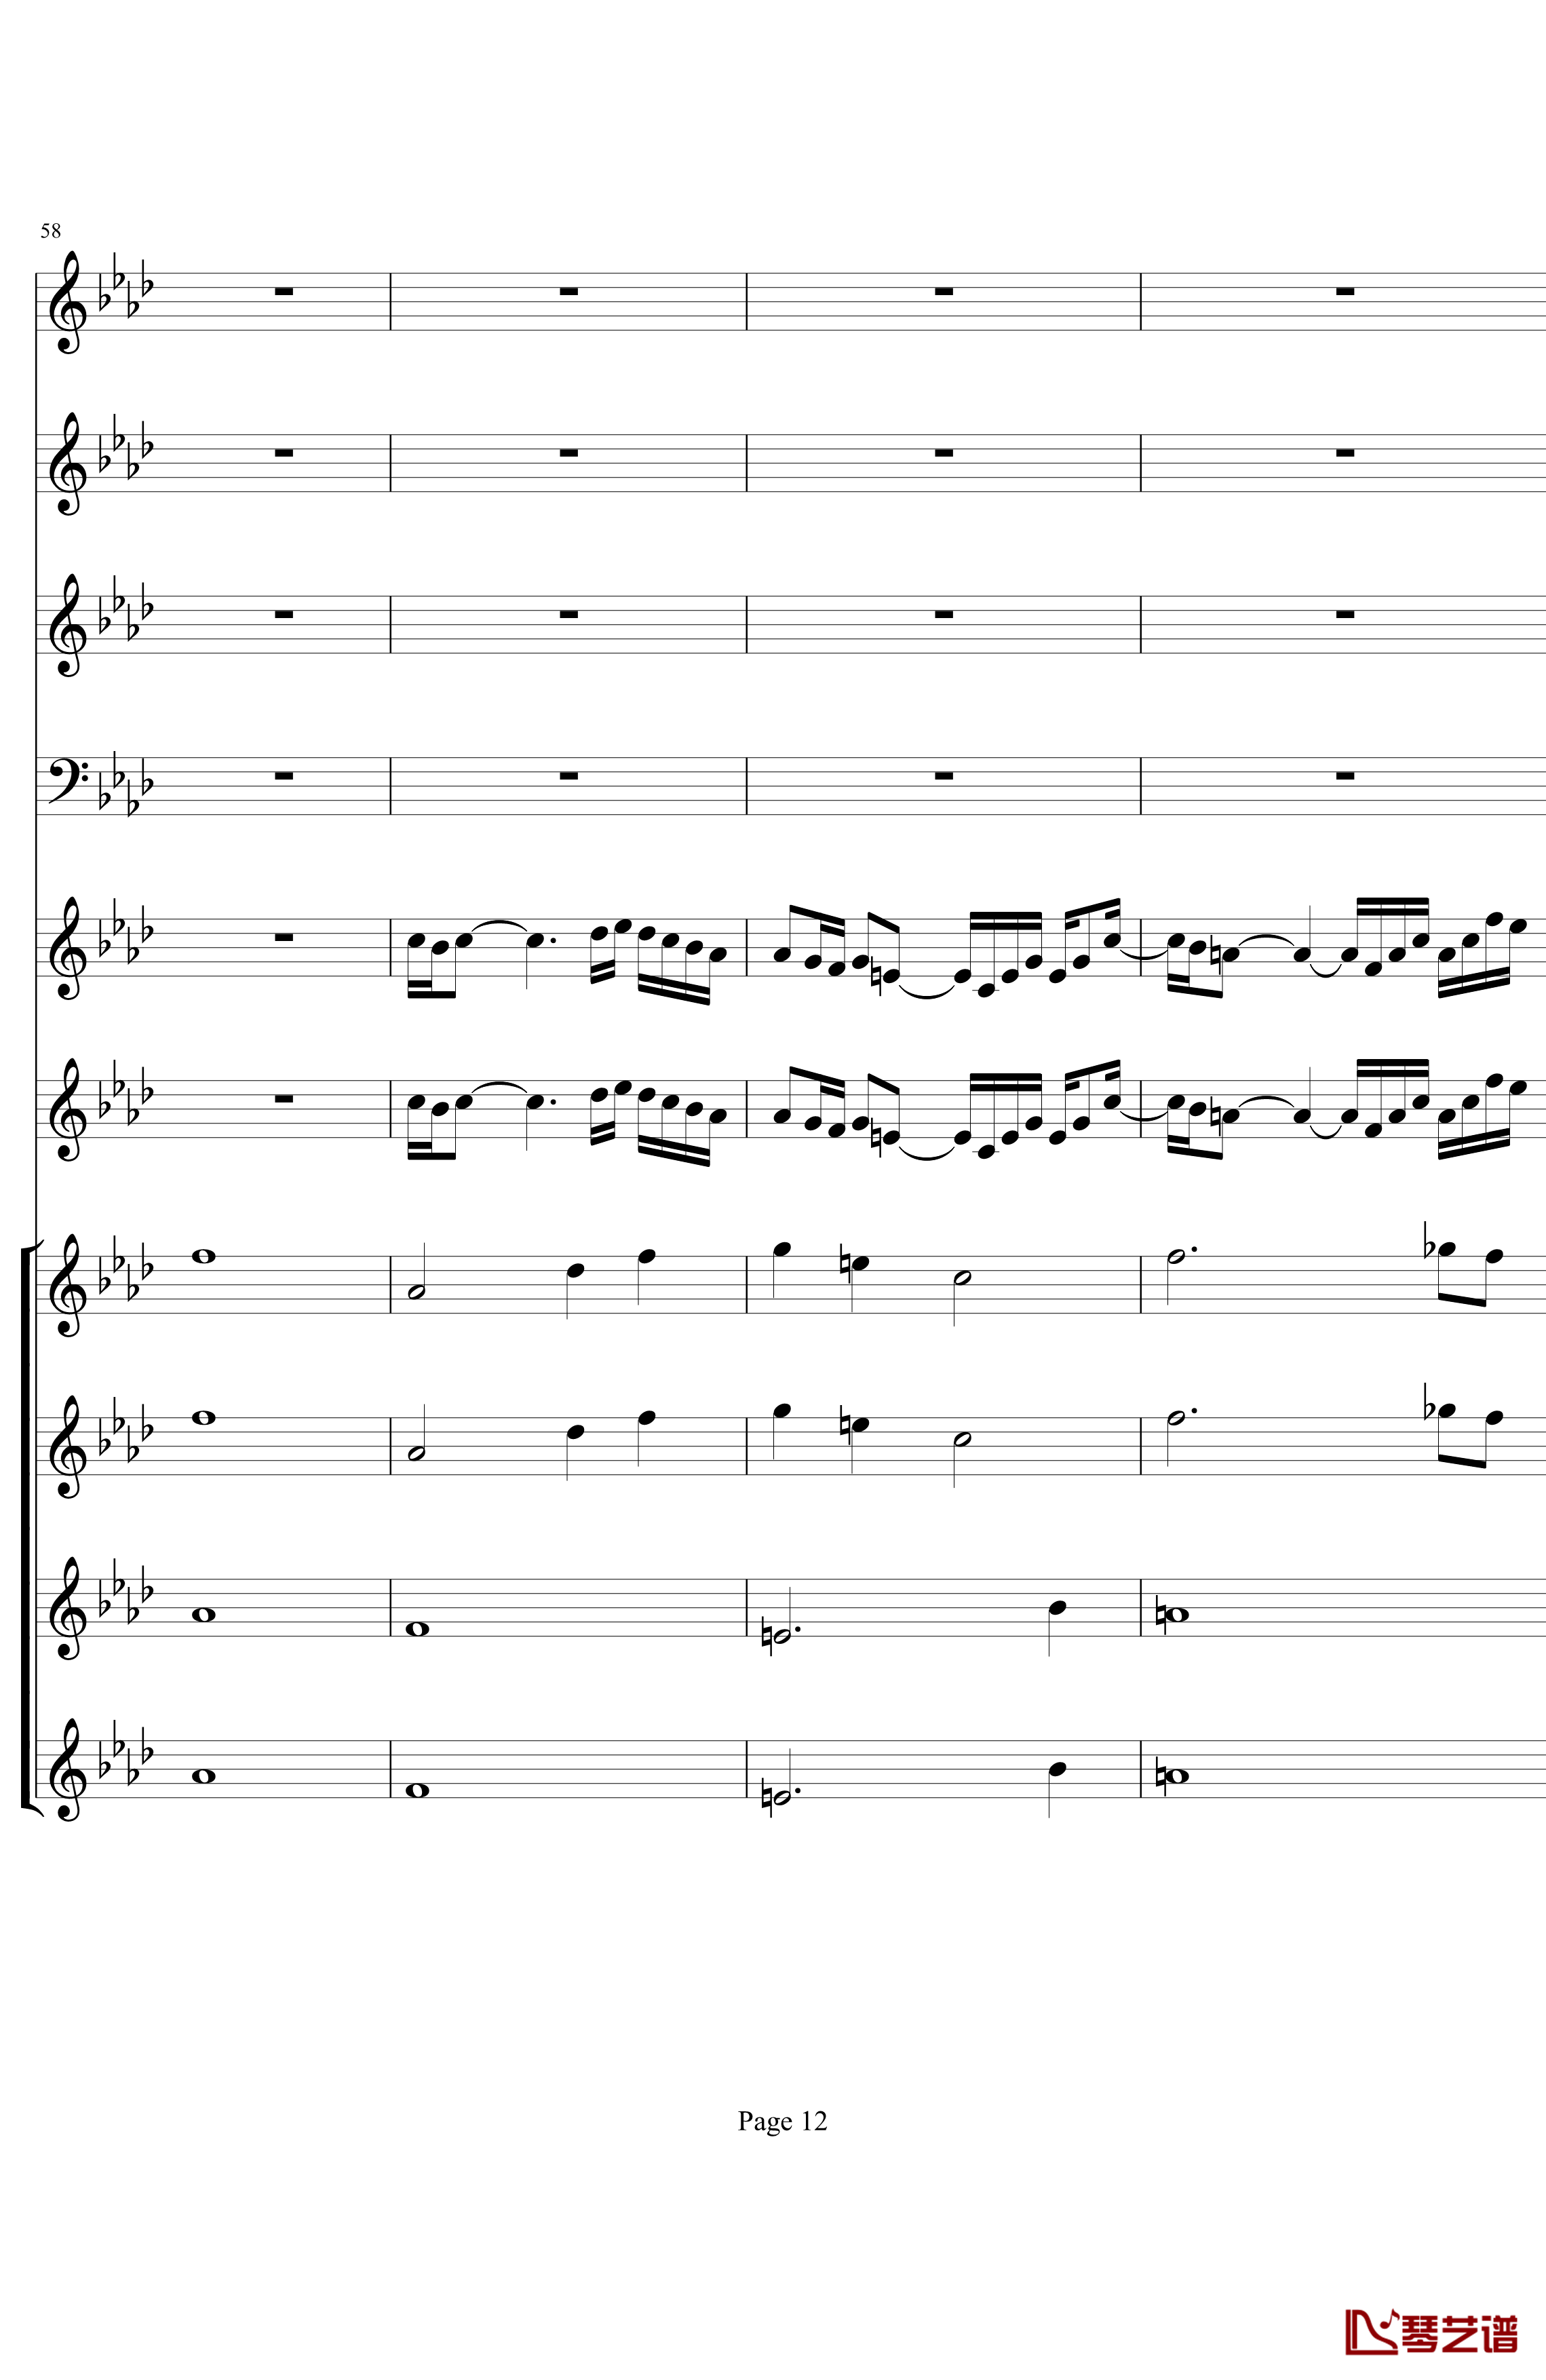 双童声协奏曲钢琴谱-Concerto Pour Deux Voix-合唱版-Saint-Preux12